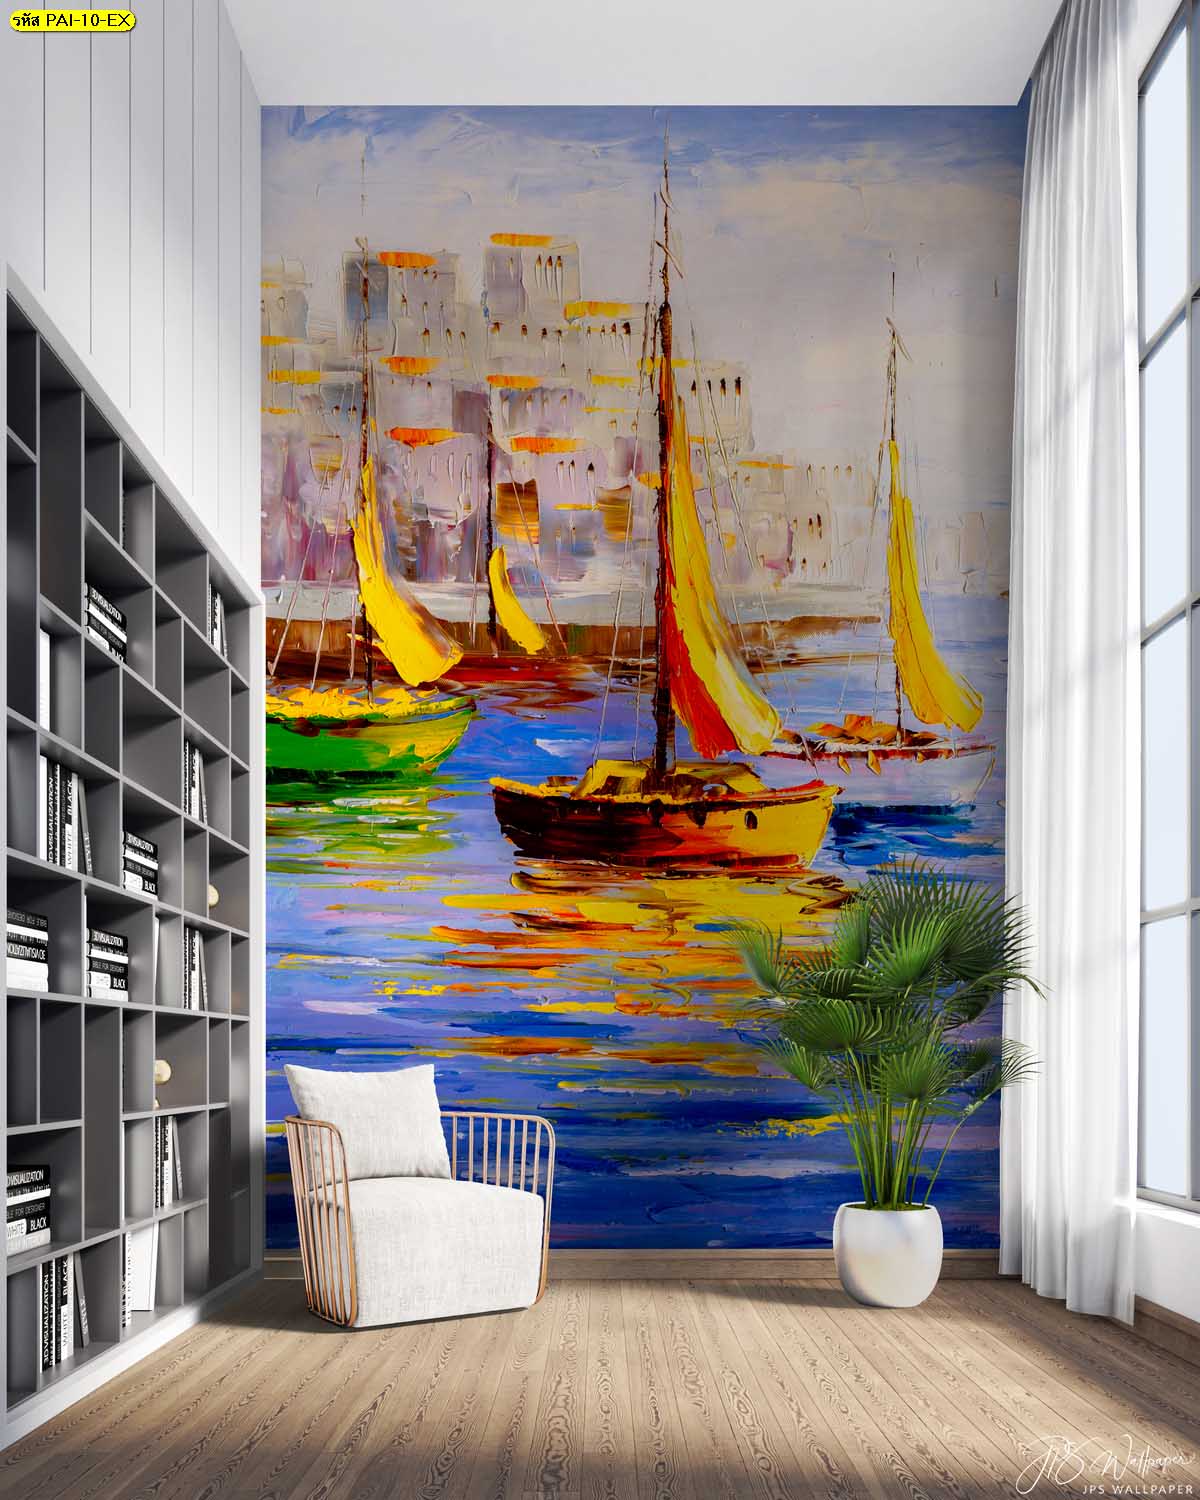 สั่งผลิต Wallpaper ภาพวาดเรือในเมืองท่องเที่ยว ภาพวาดสีน้ำมันติดห้องสมุด วิวท่าเรือ